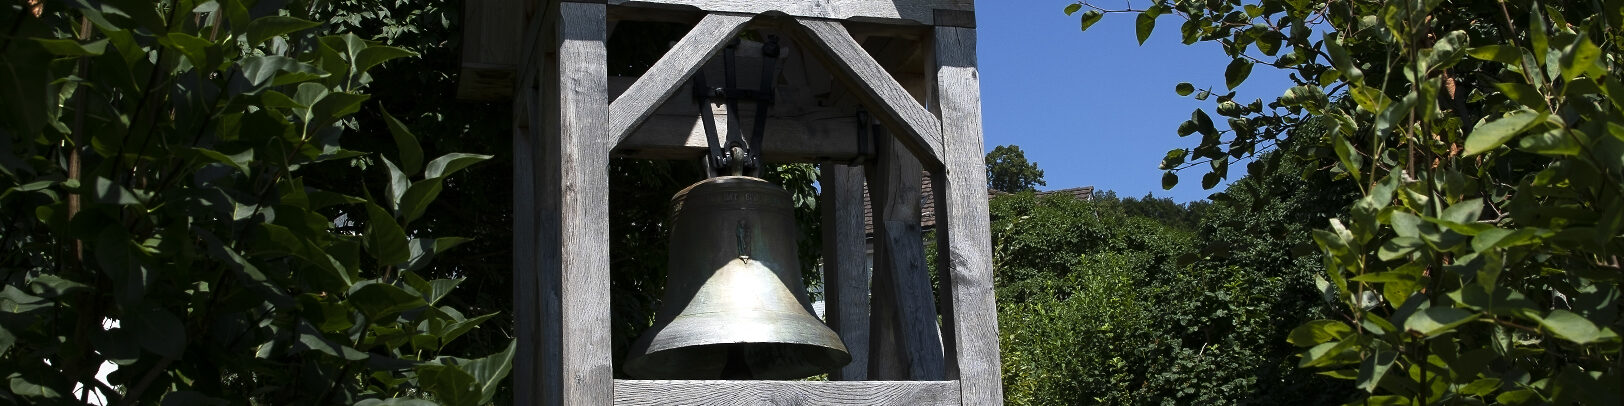 Glocke im Glockenturm (Pärkli vor der paritätischen Kirche Oberhelfenschwil)